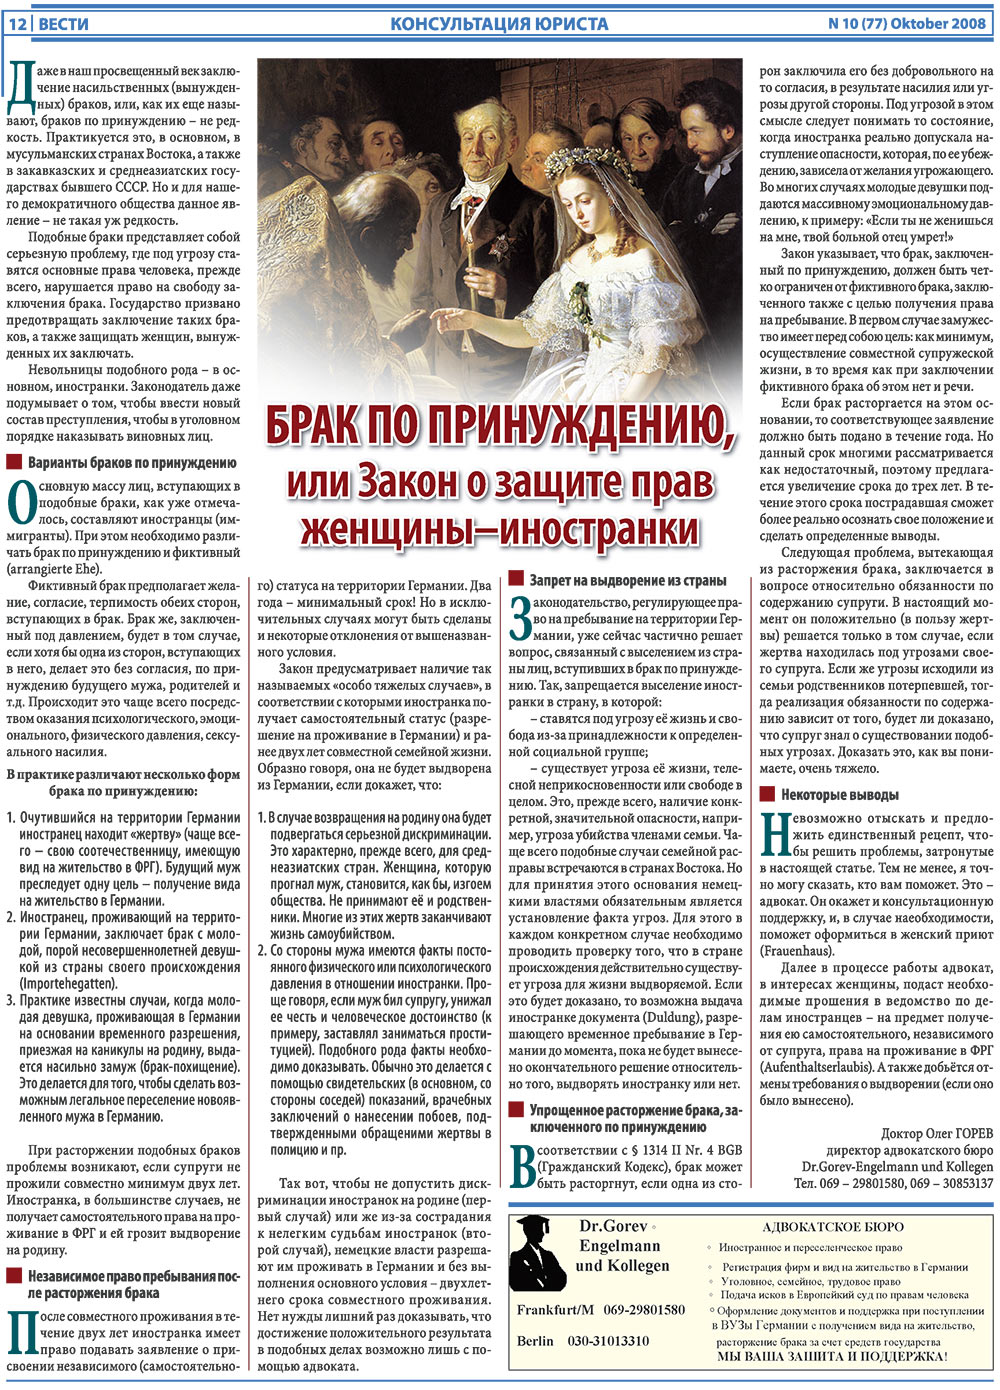 Вести, газета. 2008 №10 стр.12